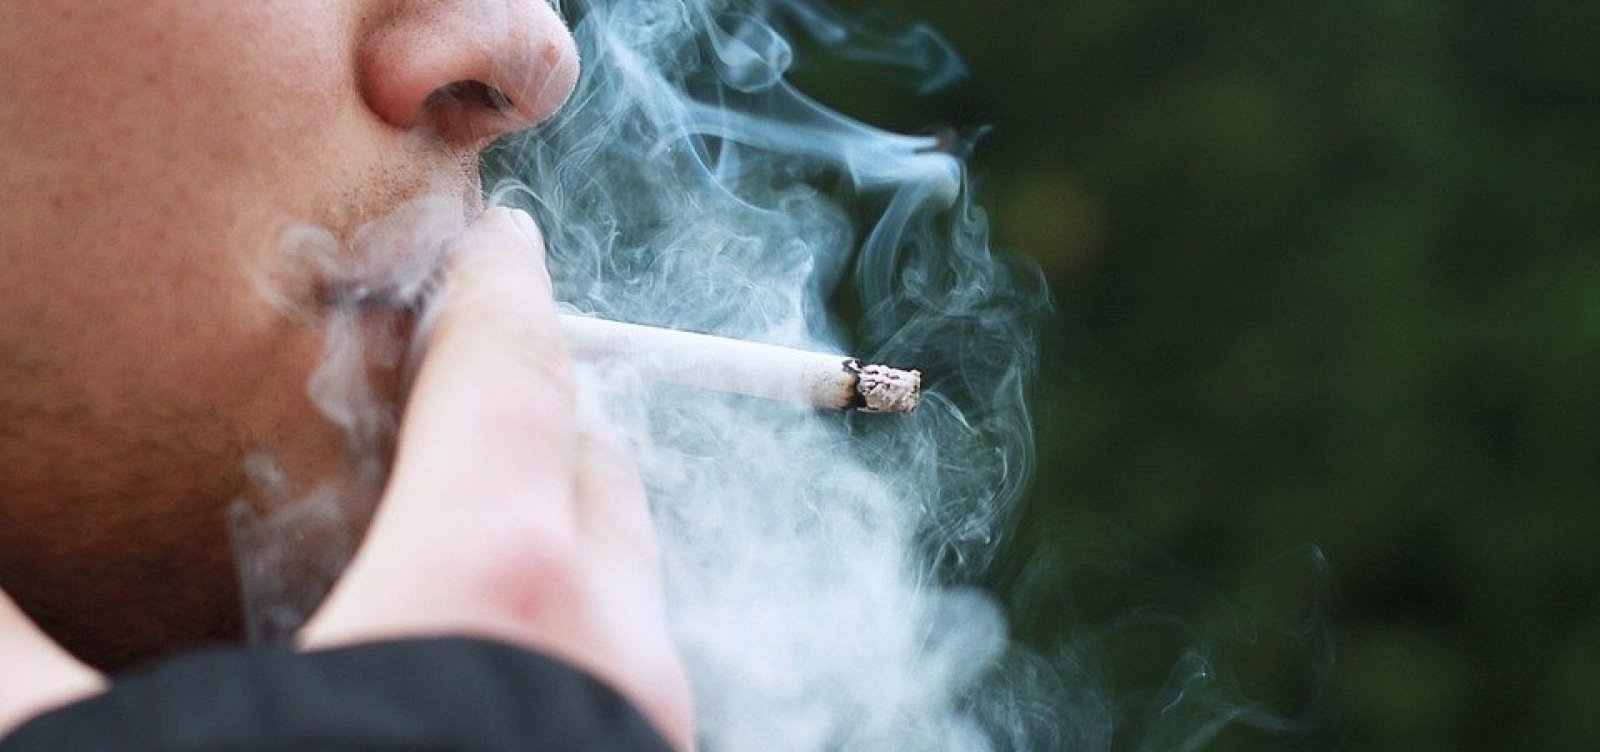 Medidas antitabaco diminuíram numero de fumantes em 40% no Brasil